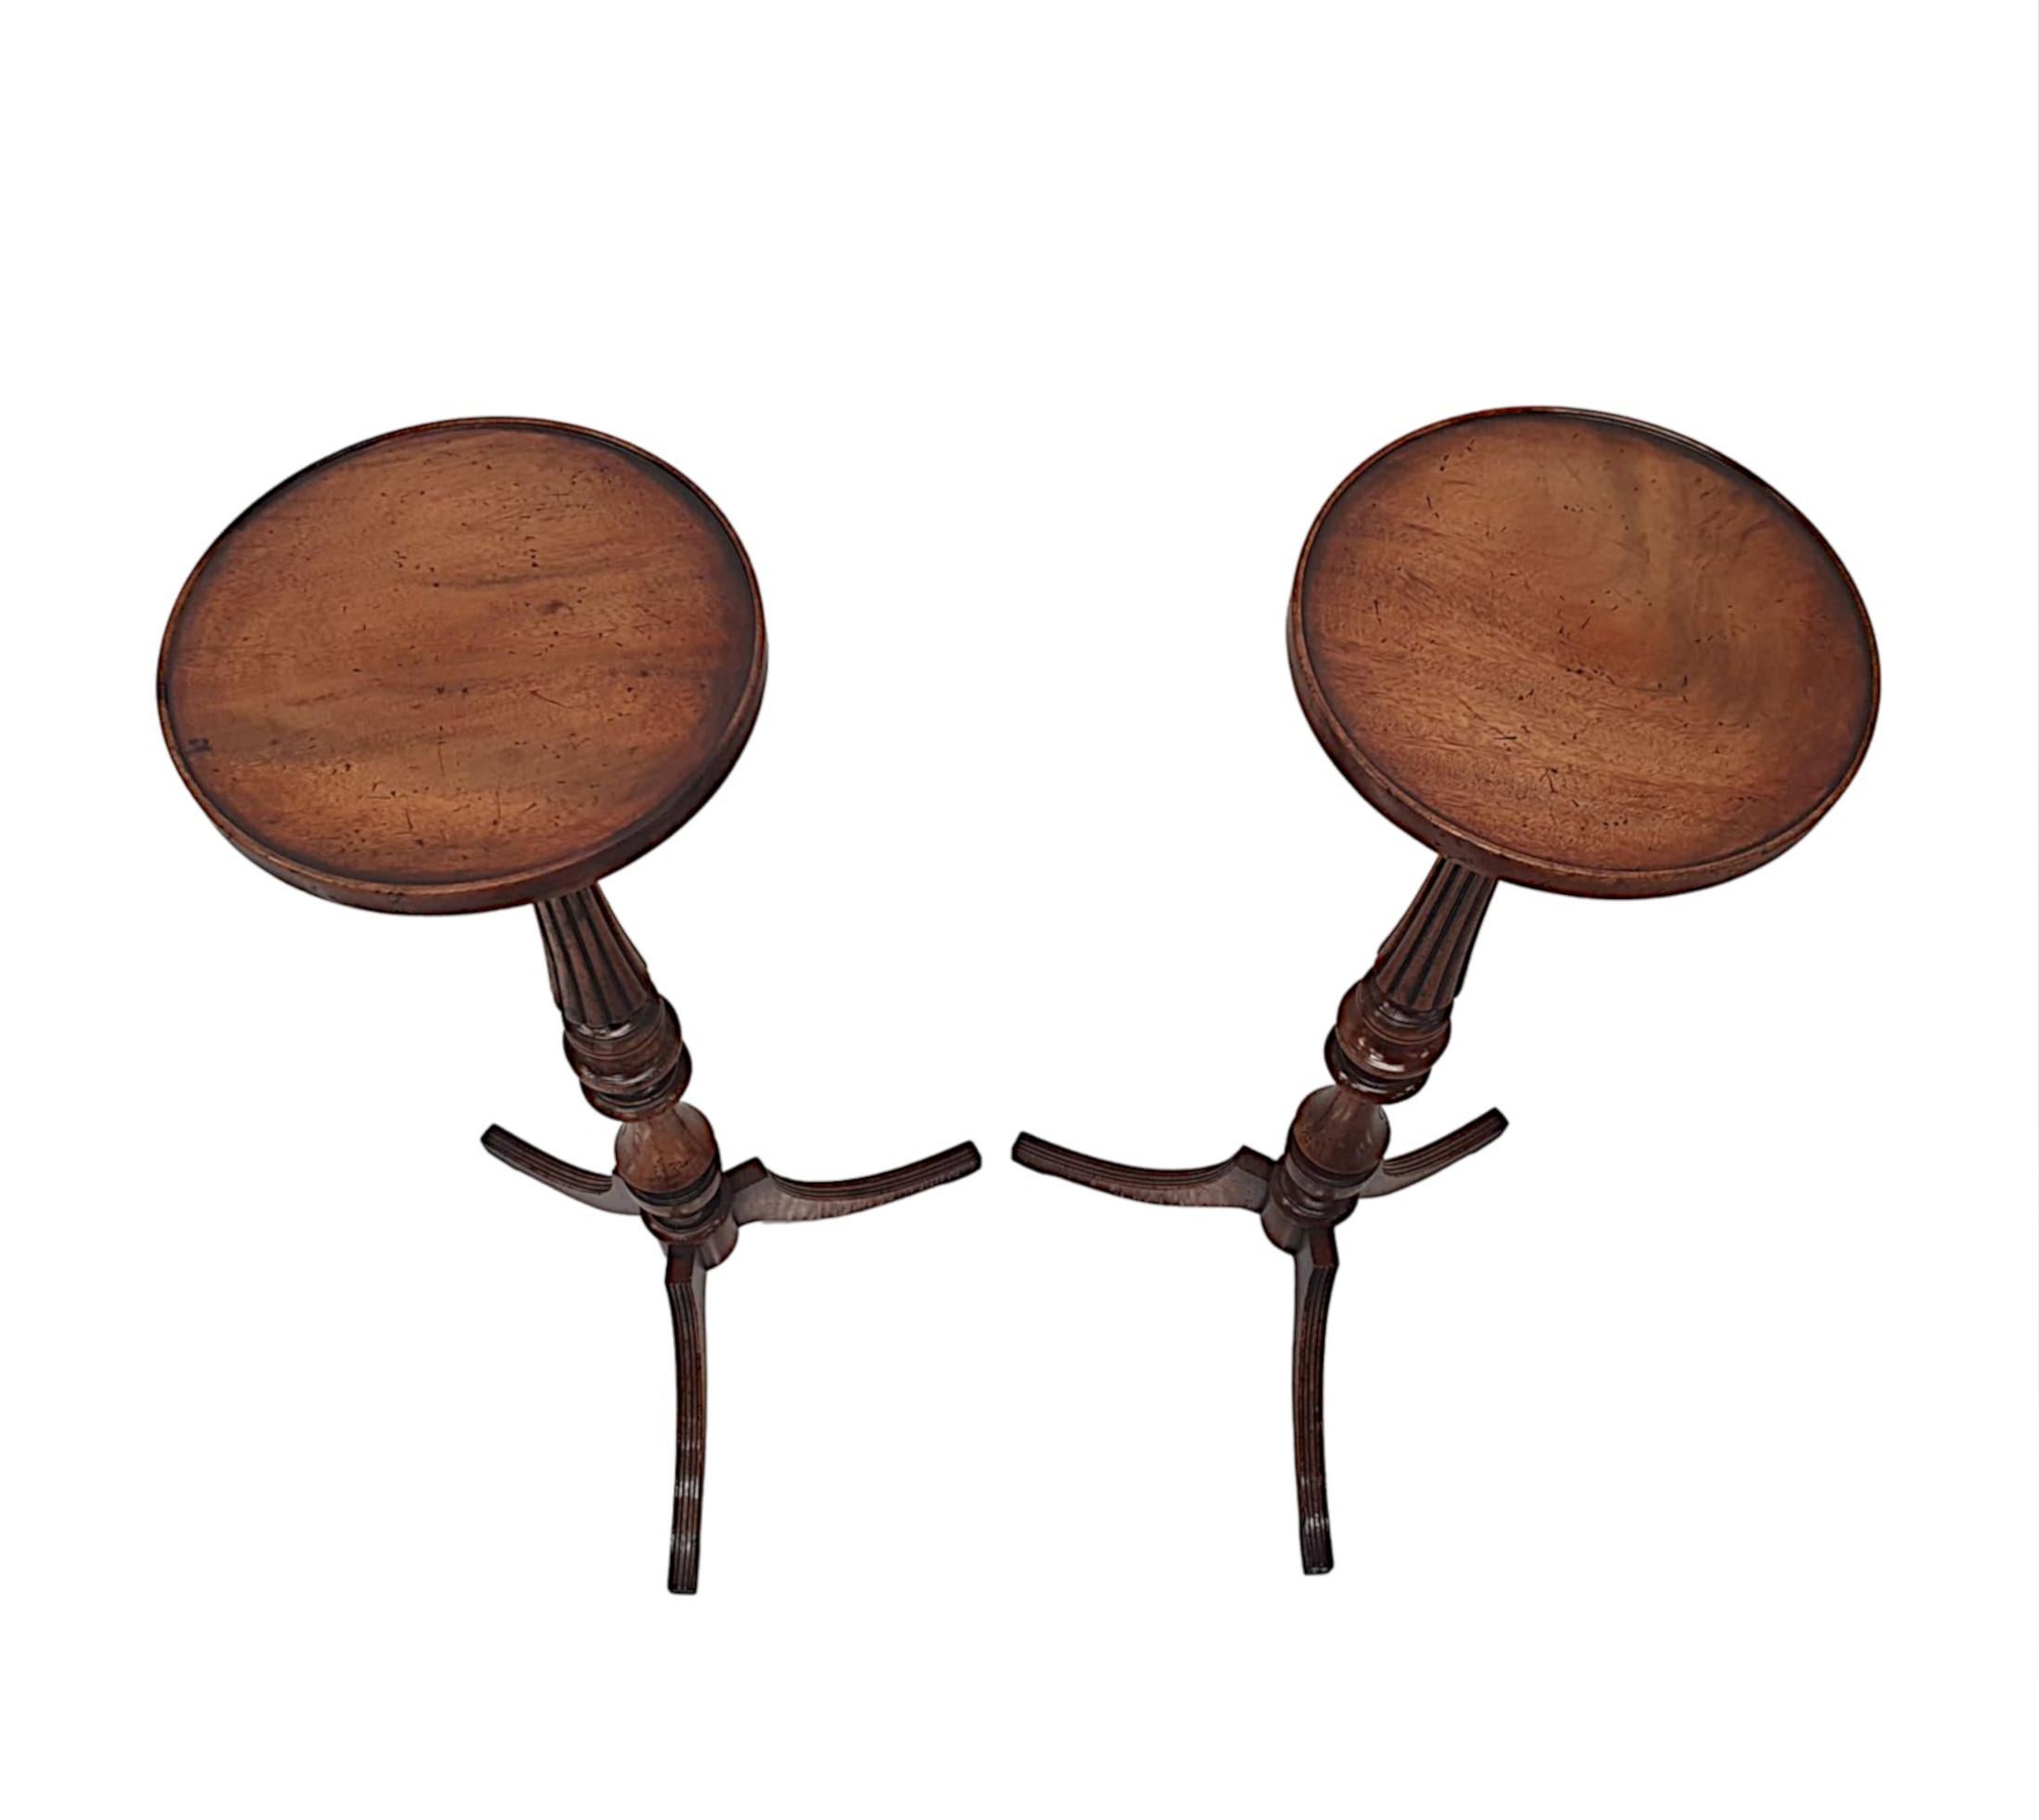 Ein prächtiges Paar reich patinierter Mahagoni-Pflanzenständer des 20. Jahrhunderts. Die profilierte Platte in runder Form mit Galerierand erhebt sich über einer schlanken, ringförmig gedrehten Sockelsäule mit kannelierten Details, gestützt auf